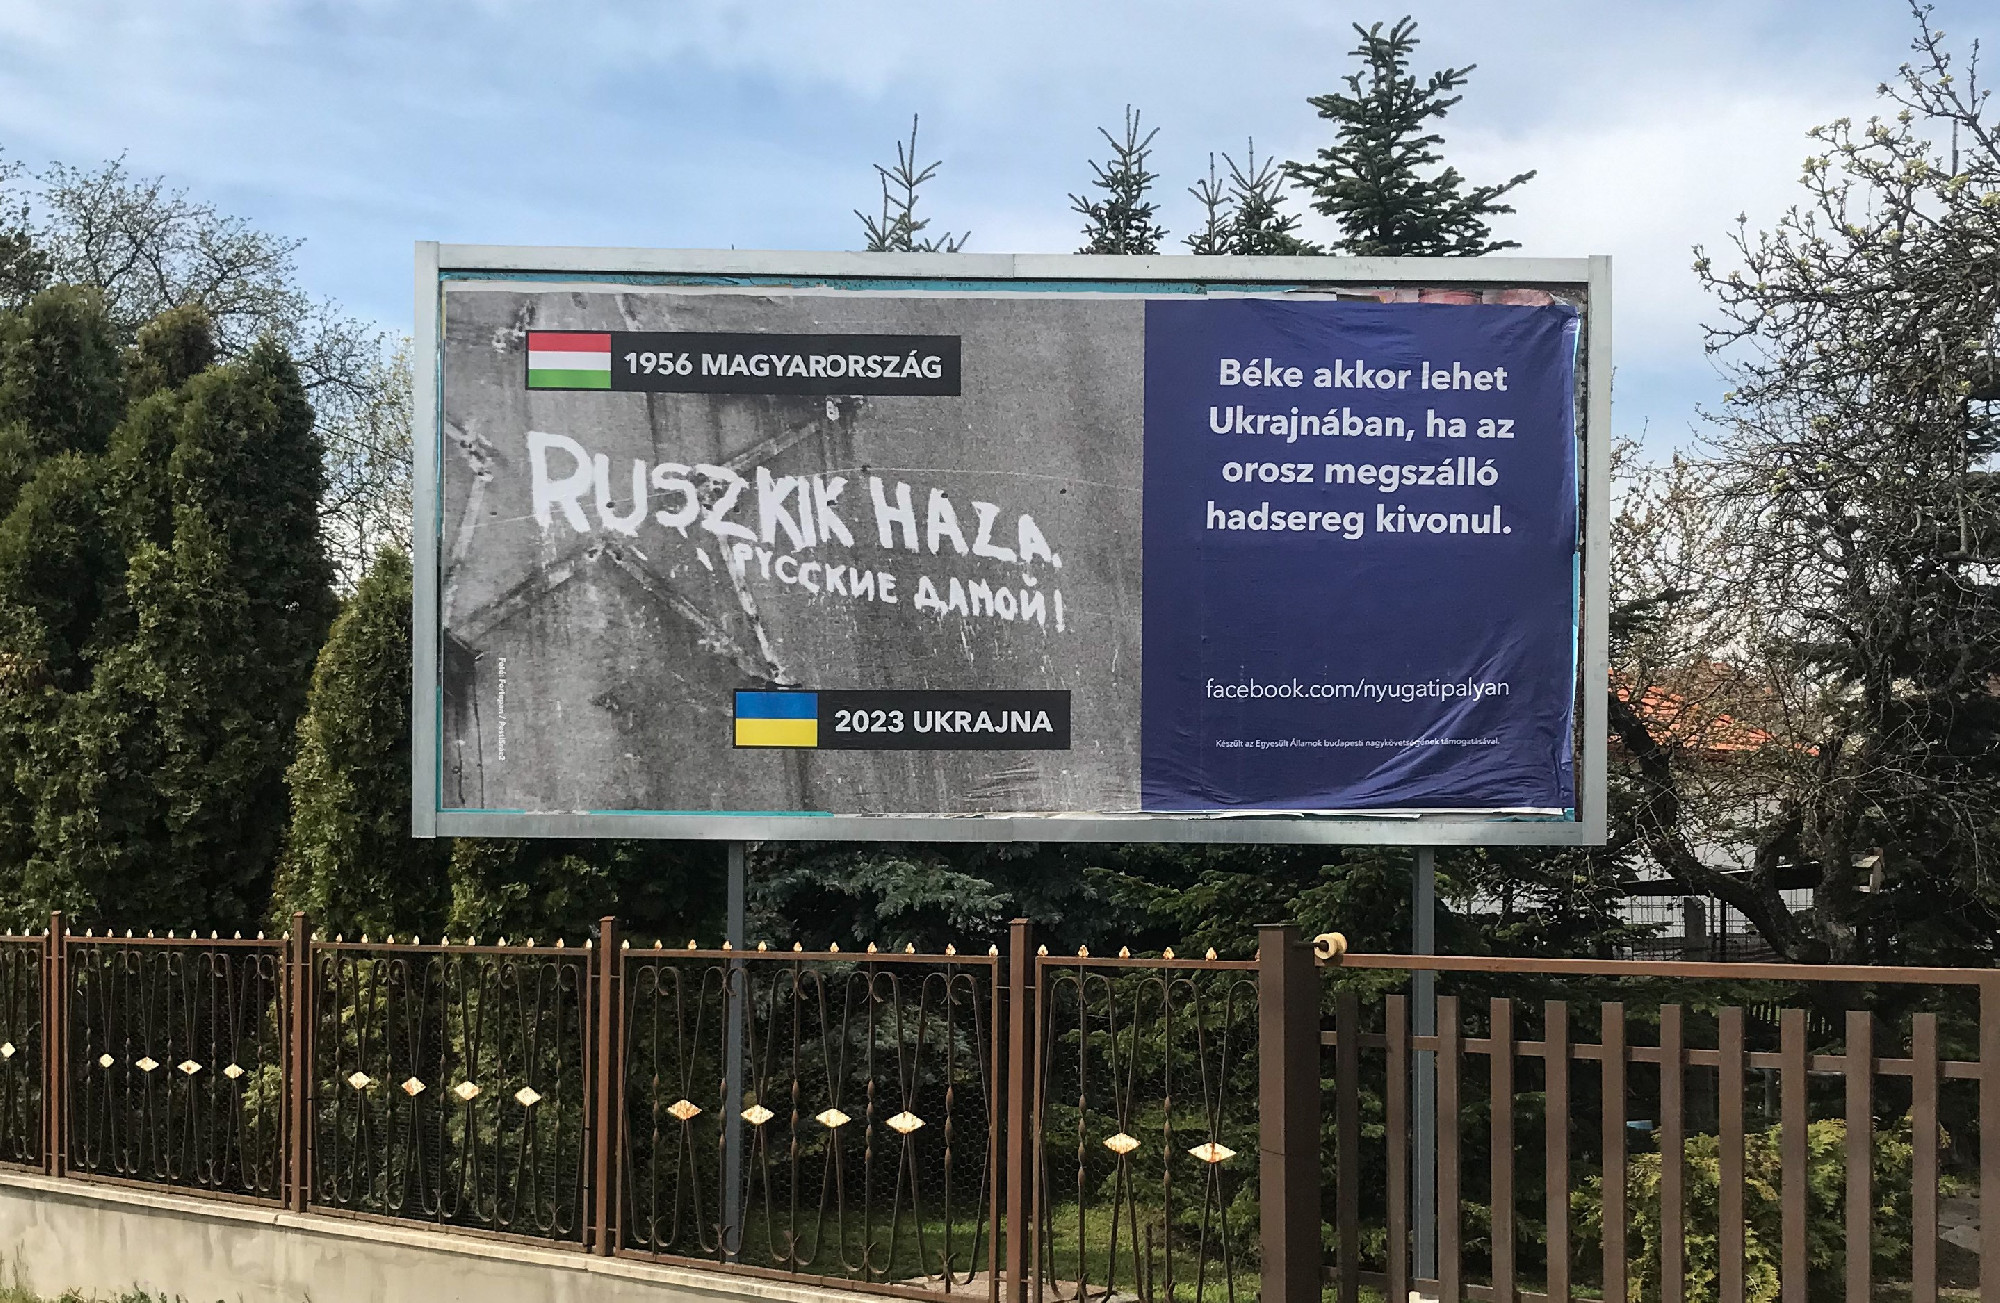 Ruszkik haza feliratú plakátok jelentek meg országszerte